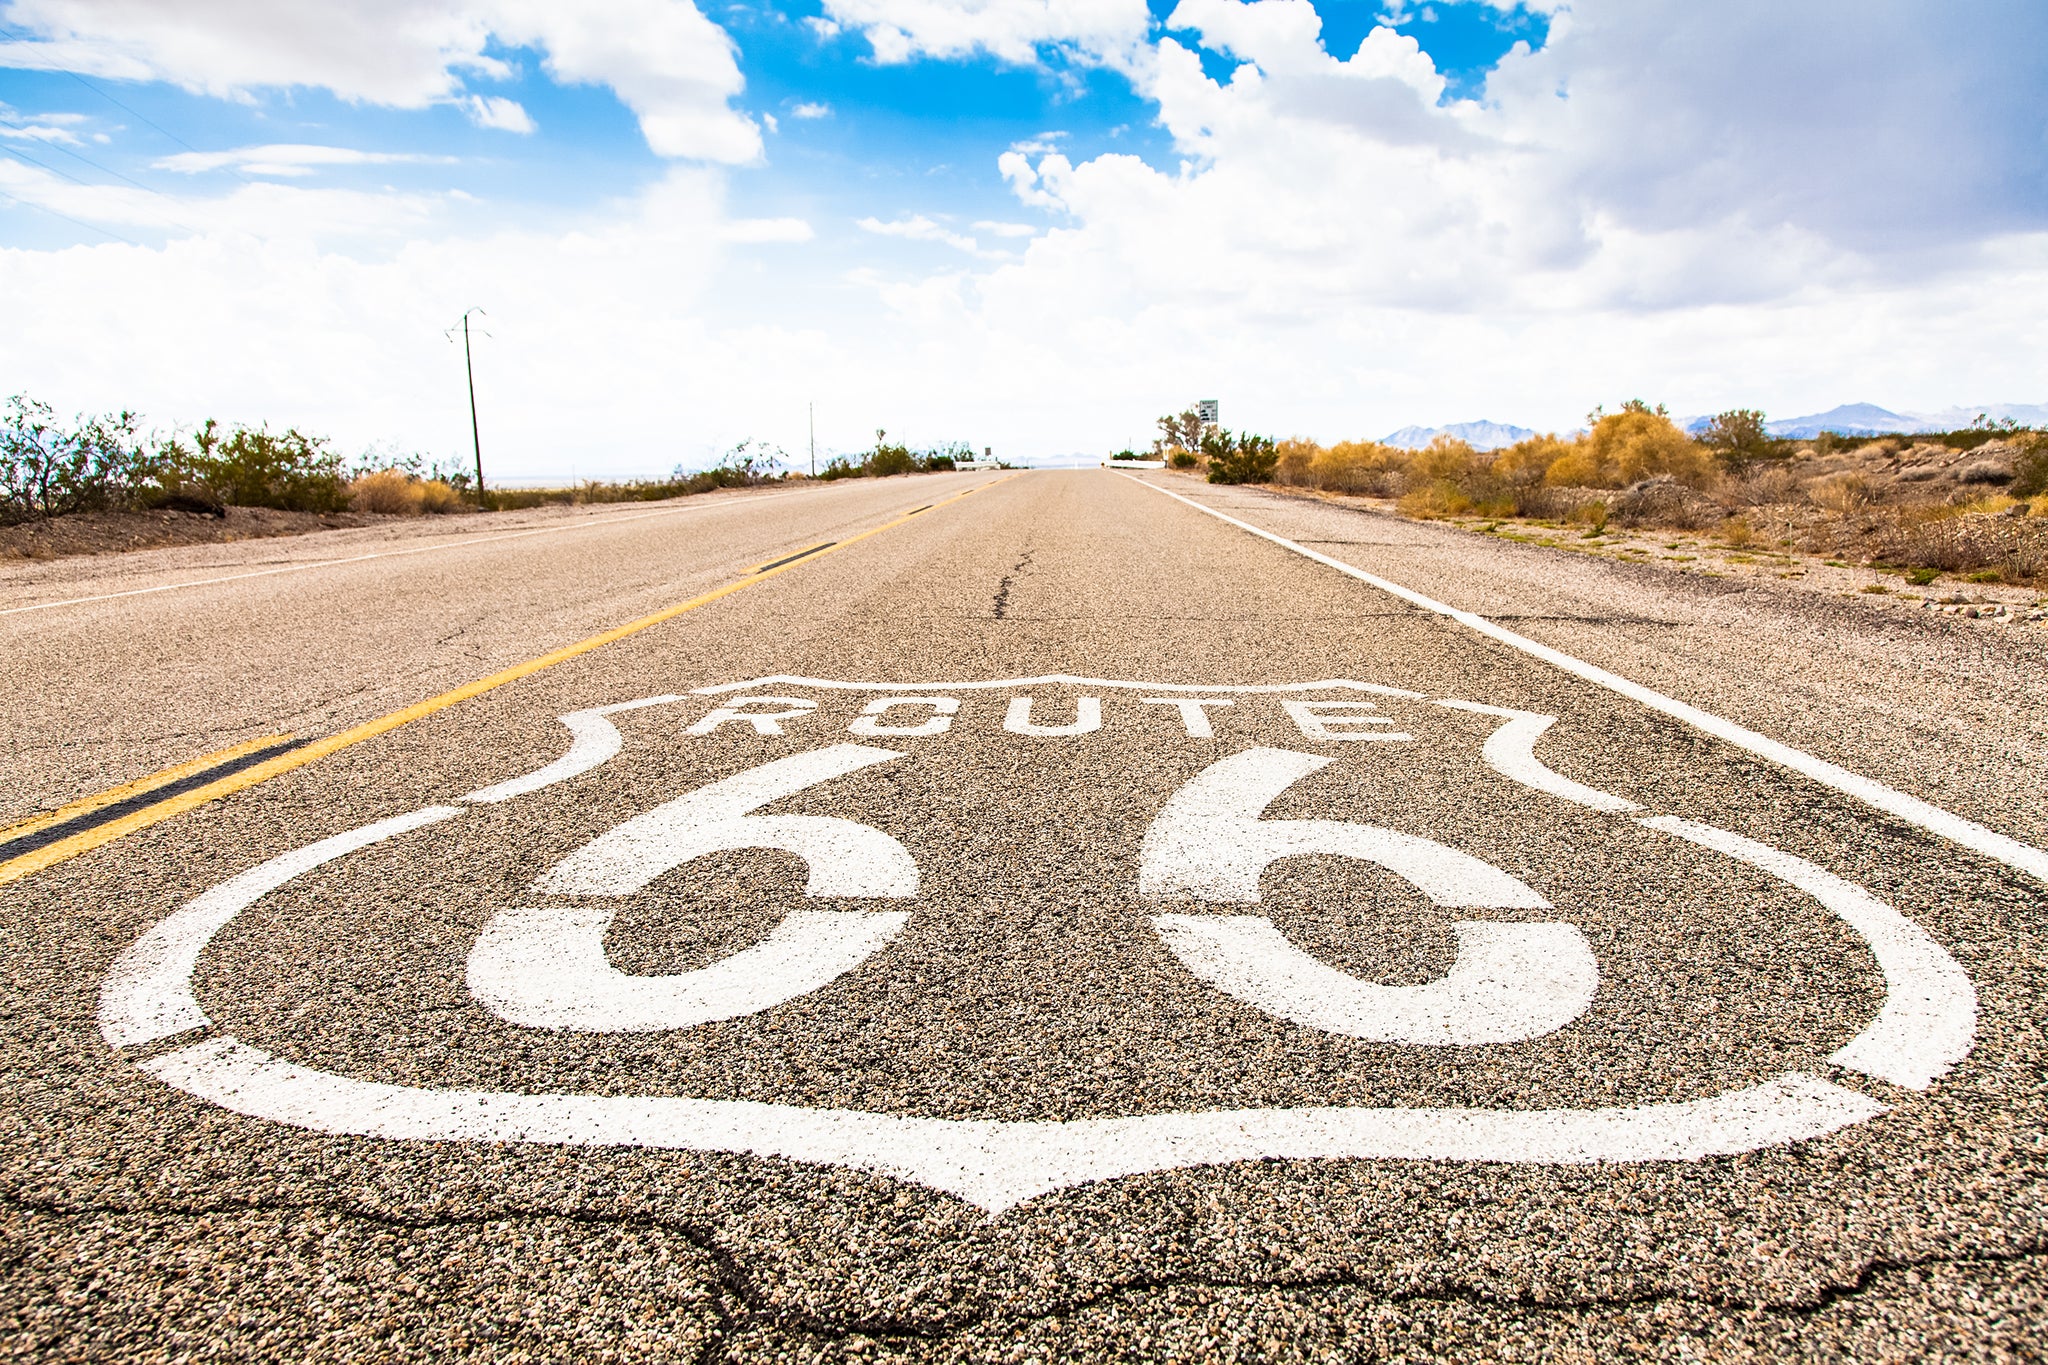 Famous Route 66 landmark on the road in Californian desert.